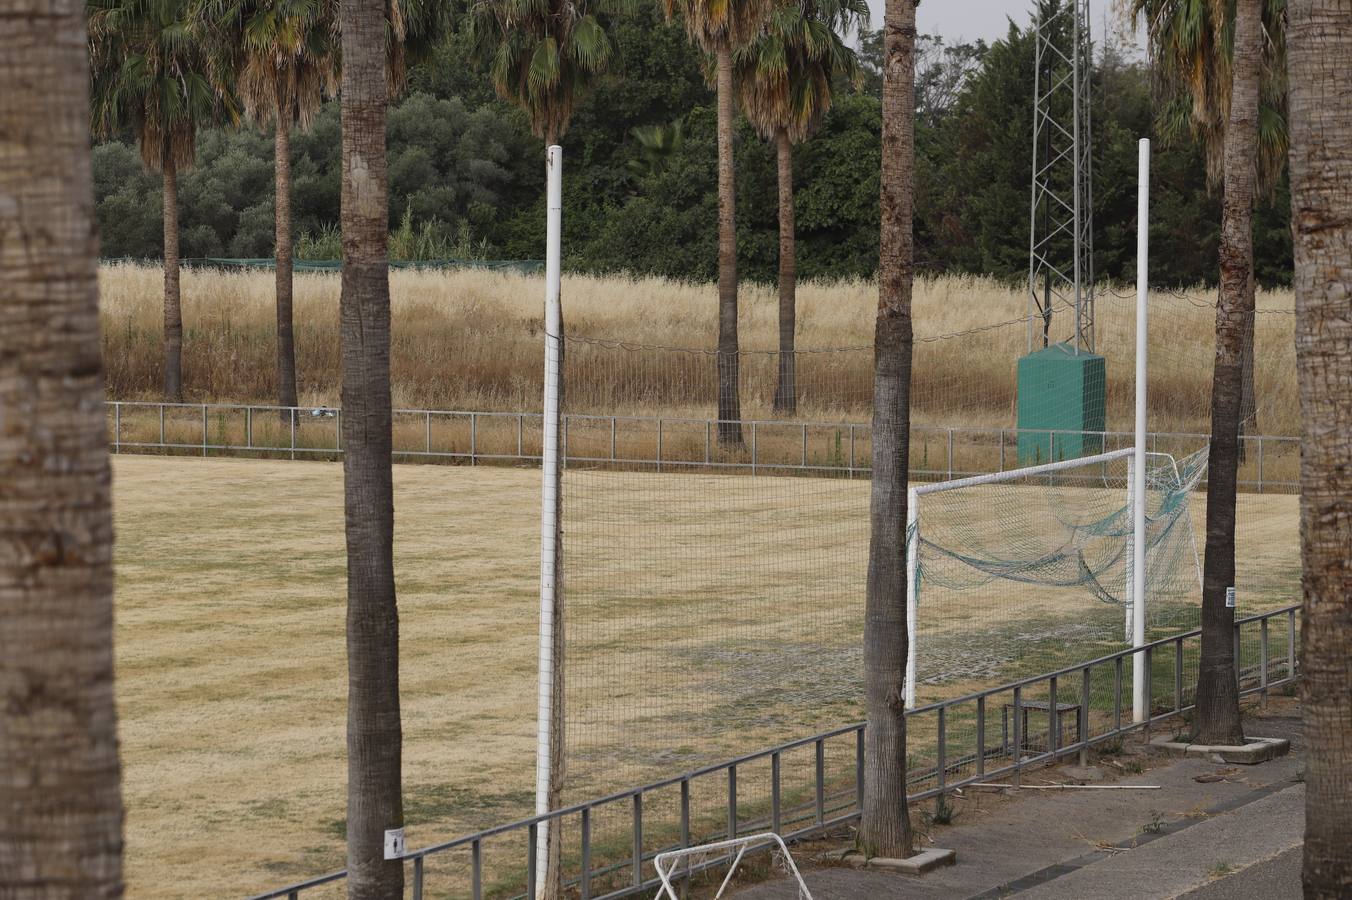 El mal estado de la Ciudad deportiva del Córdoba, en imágenes